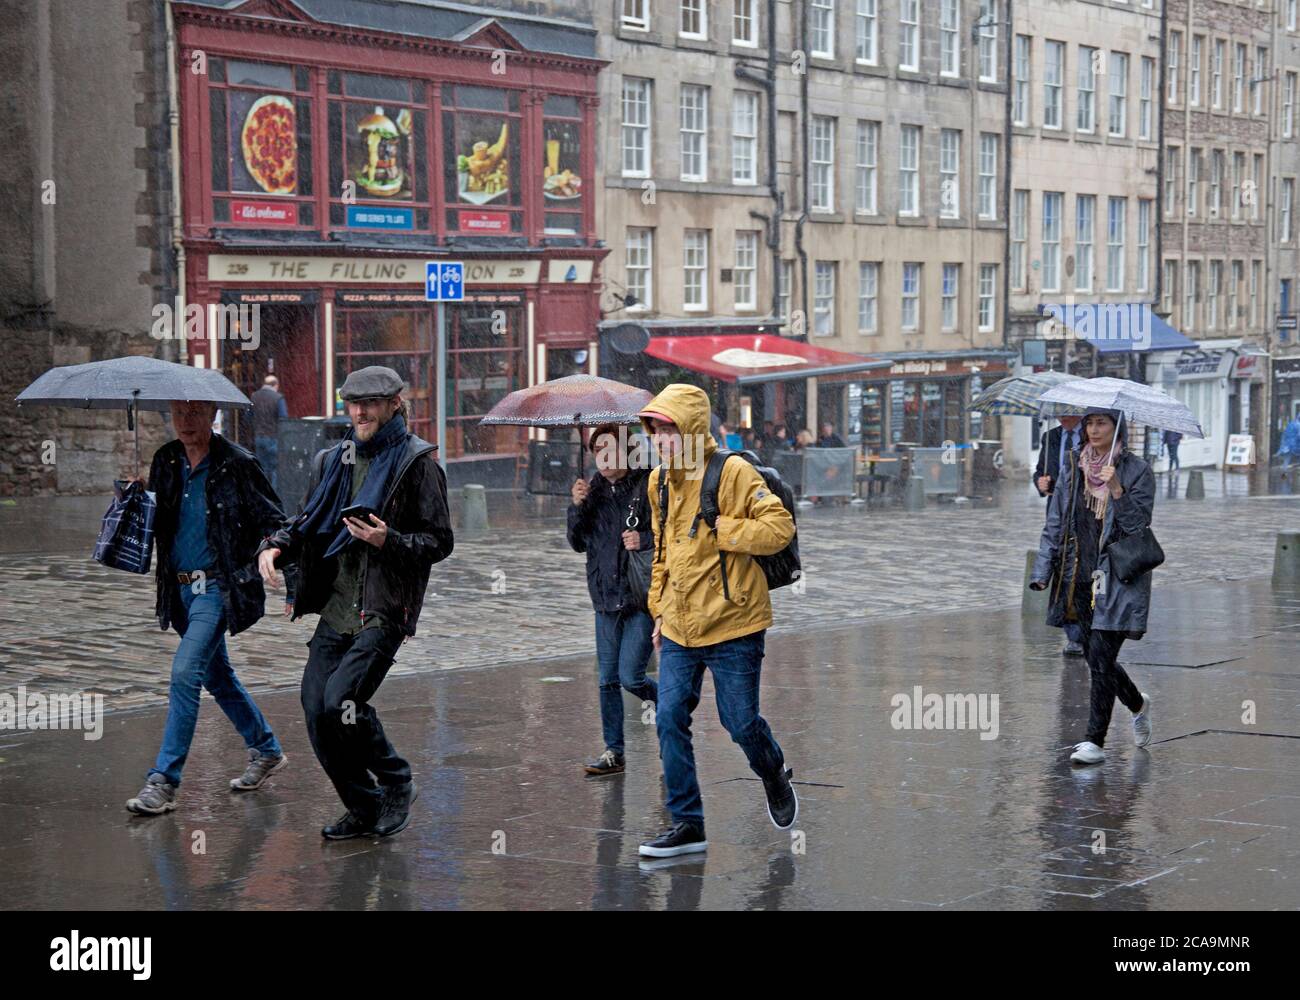 Rain, Royal Mile Edinburgh City Centre, Schottland, Großbritannien. August 2020. Sintflutartiger Regen am Nachmittag nach einem trockenen, bewölkten Morgenregen kam gegen 14 Uhr an, was den Touristen und Einheimischen ein Durchnässen gab. Offensichtlich hatte nicht jeder die Prognose vor der Abreise überprüft. Stockfoto